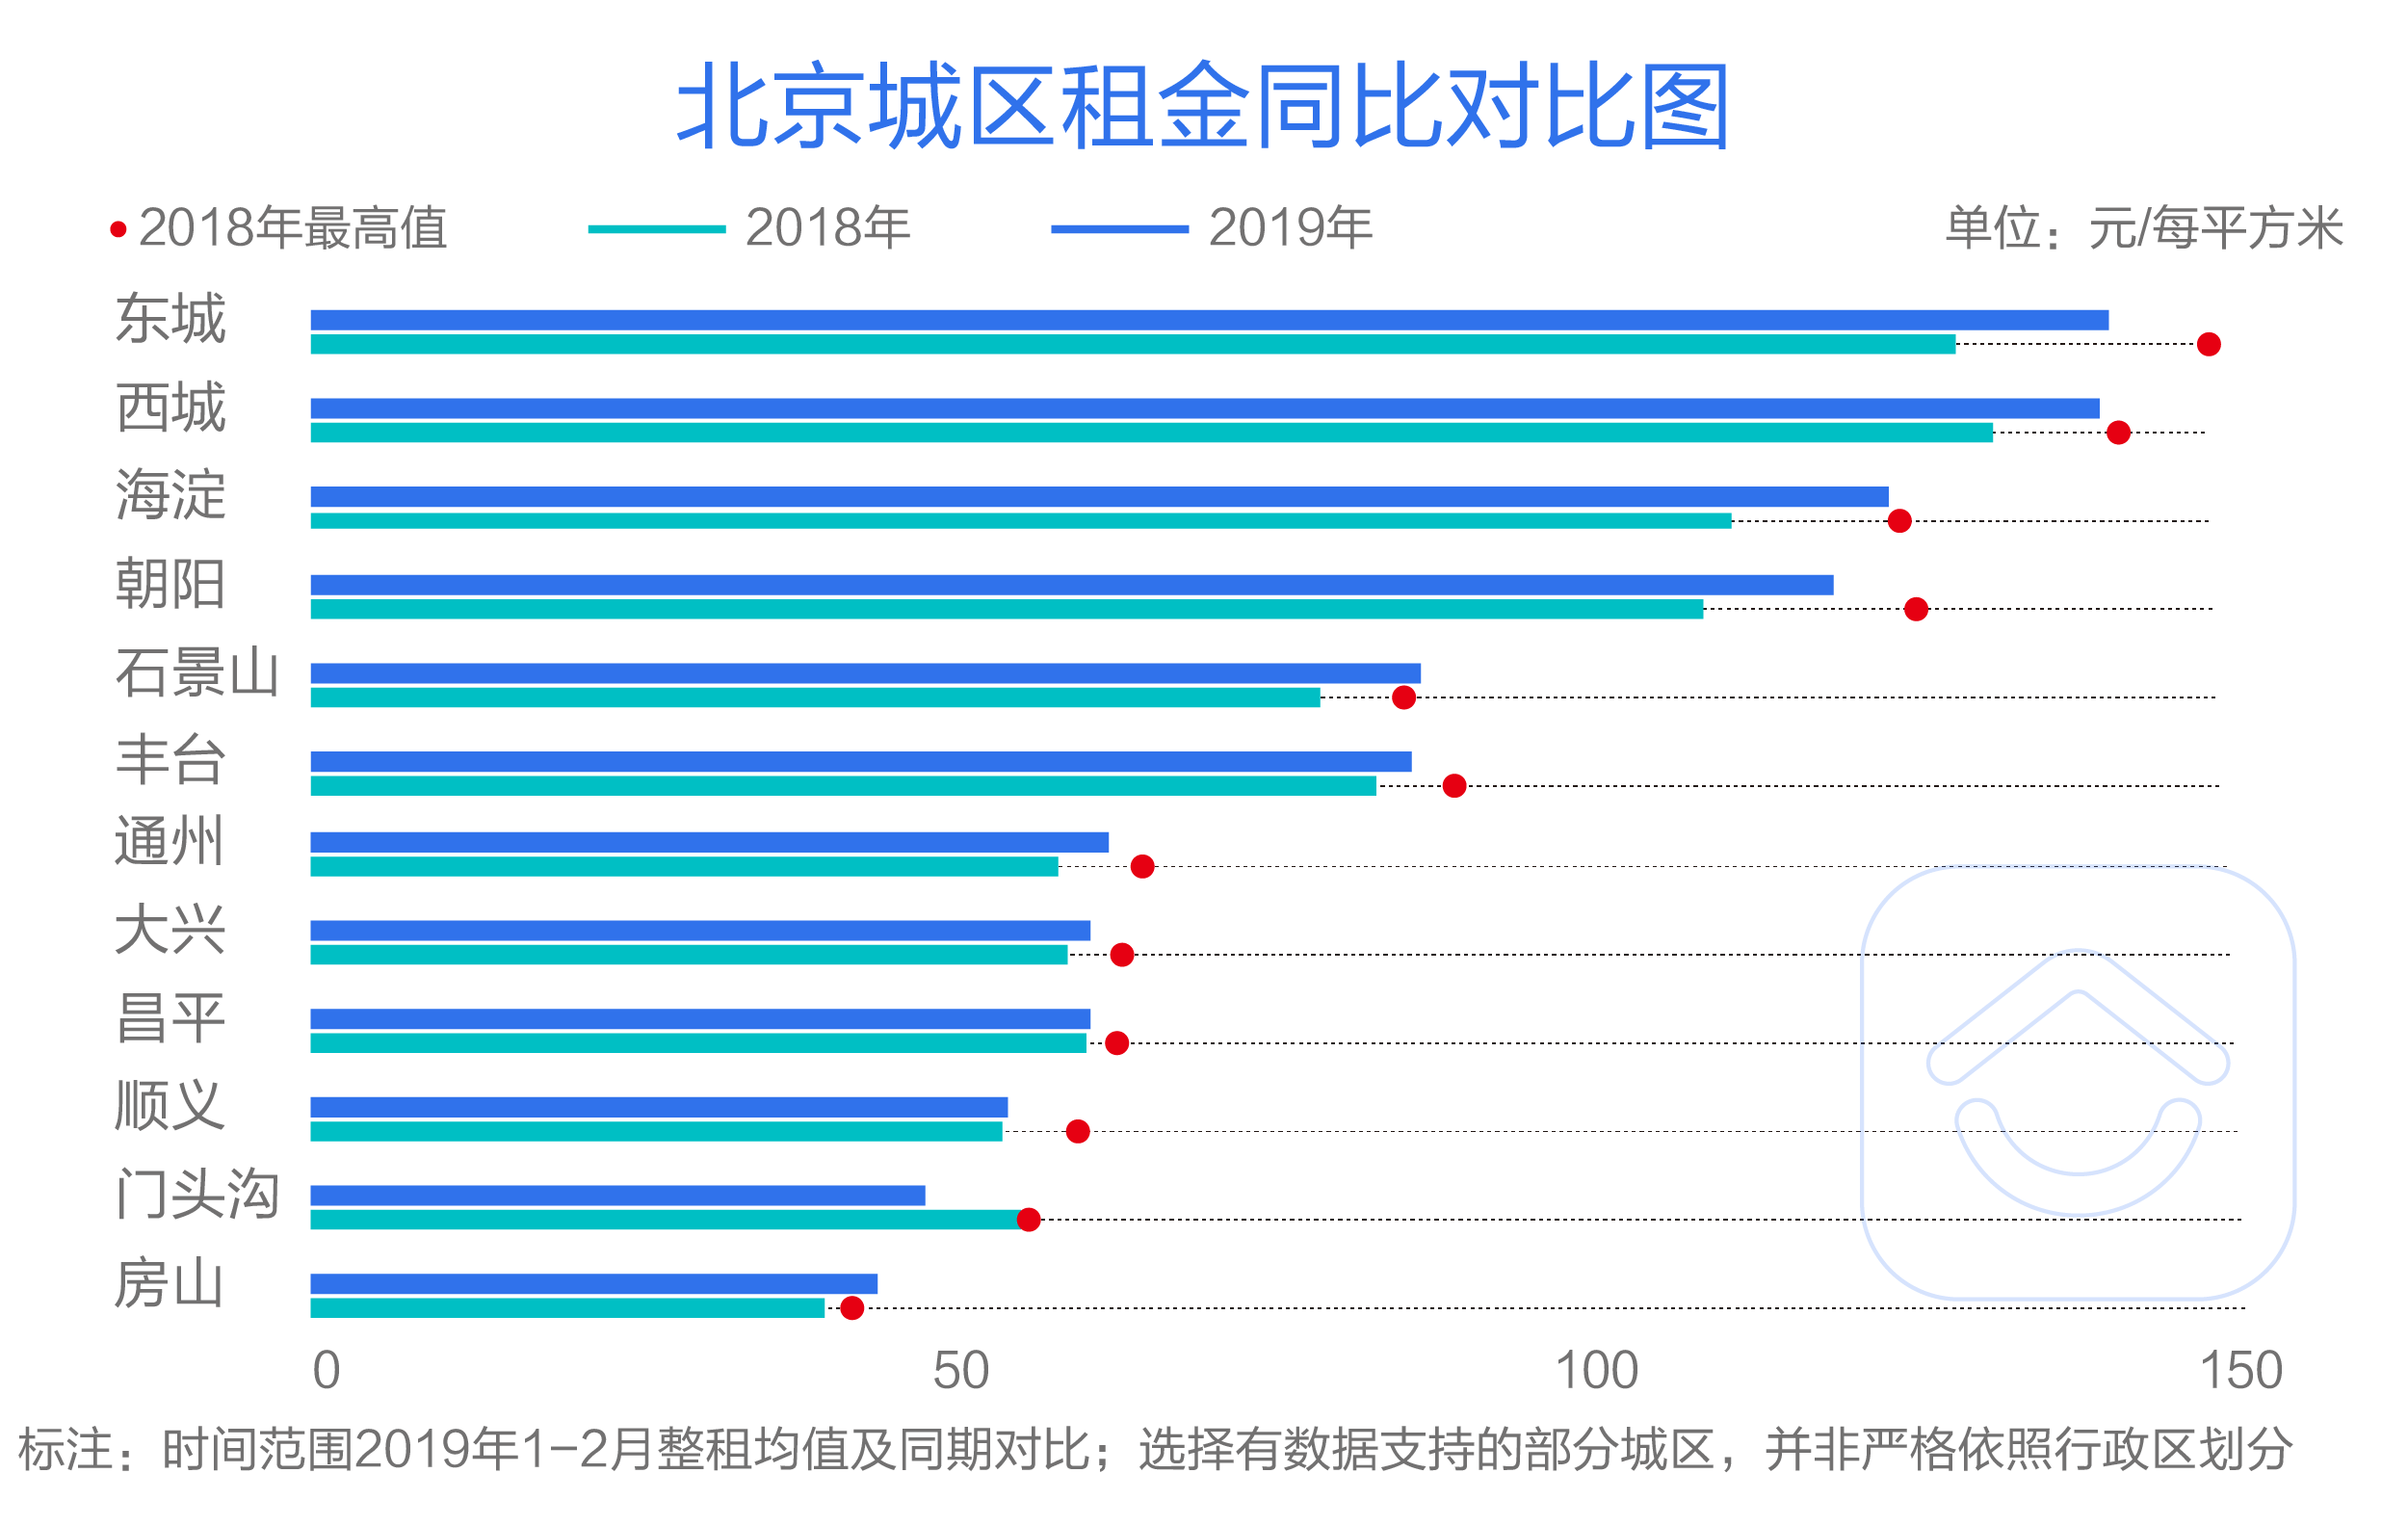 贝壳找房数据详解 最火租房季 :合租率北京过半